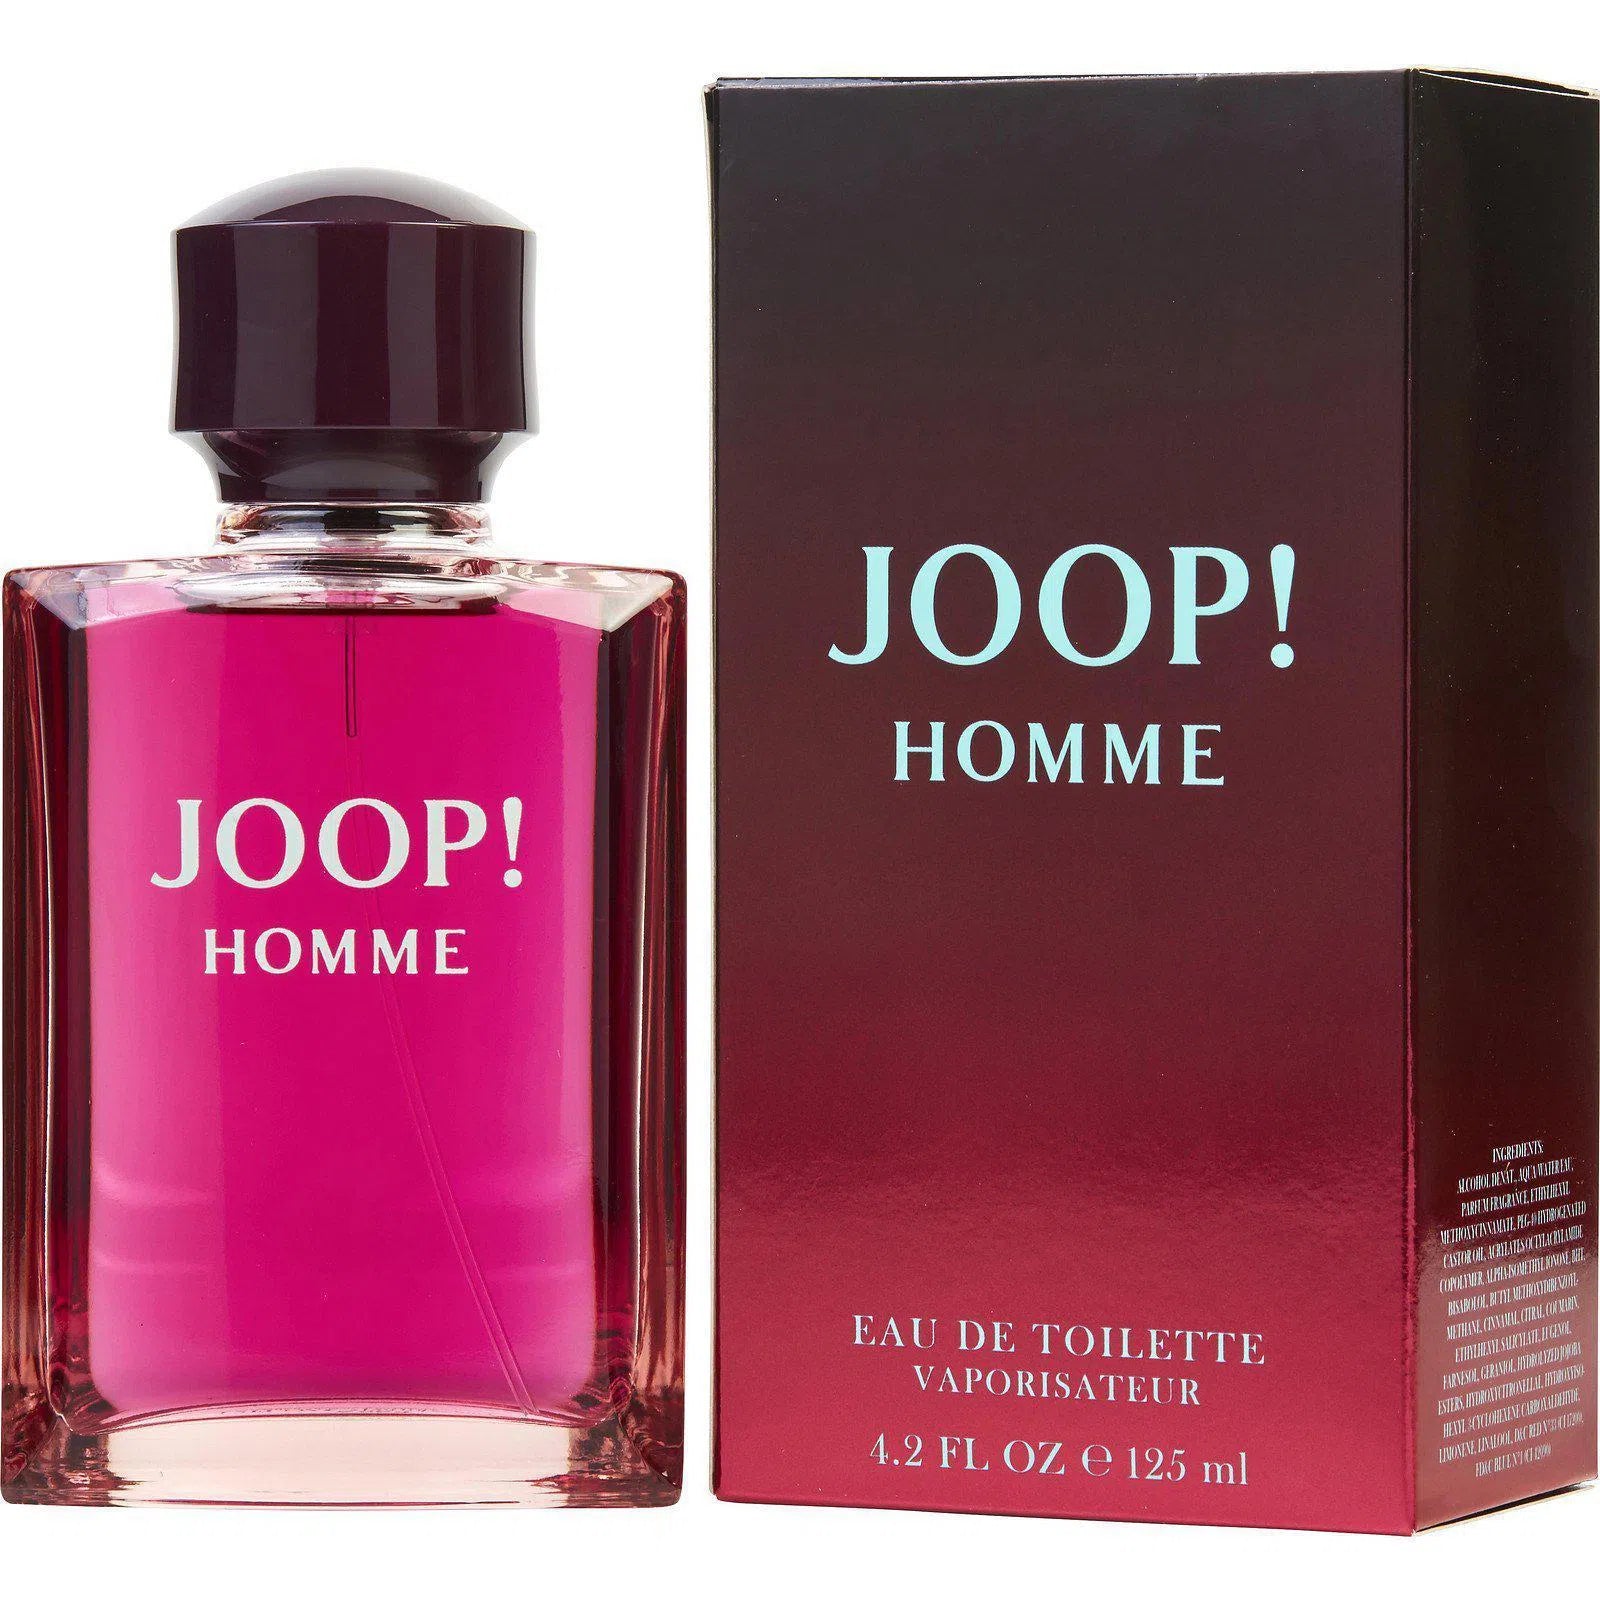 Perfume Joop! Homme EDT (M) / 125 ml - 3414206000608- Prive Perfumes Honduras